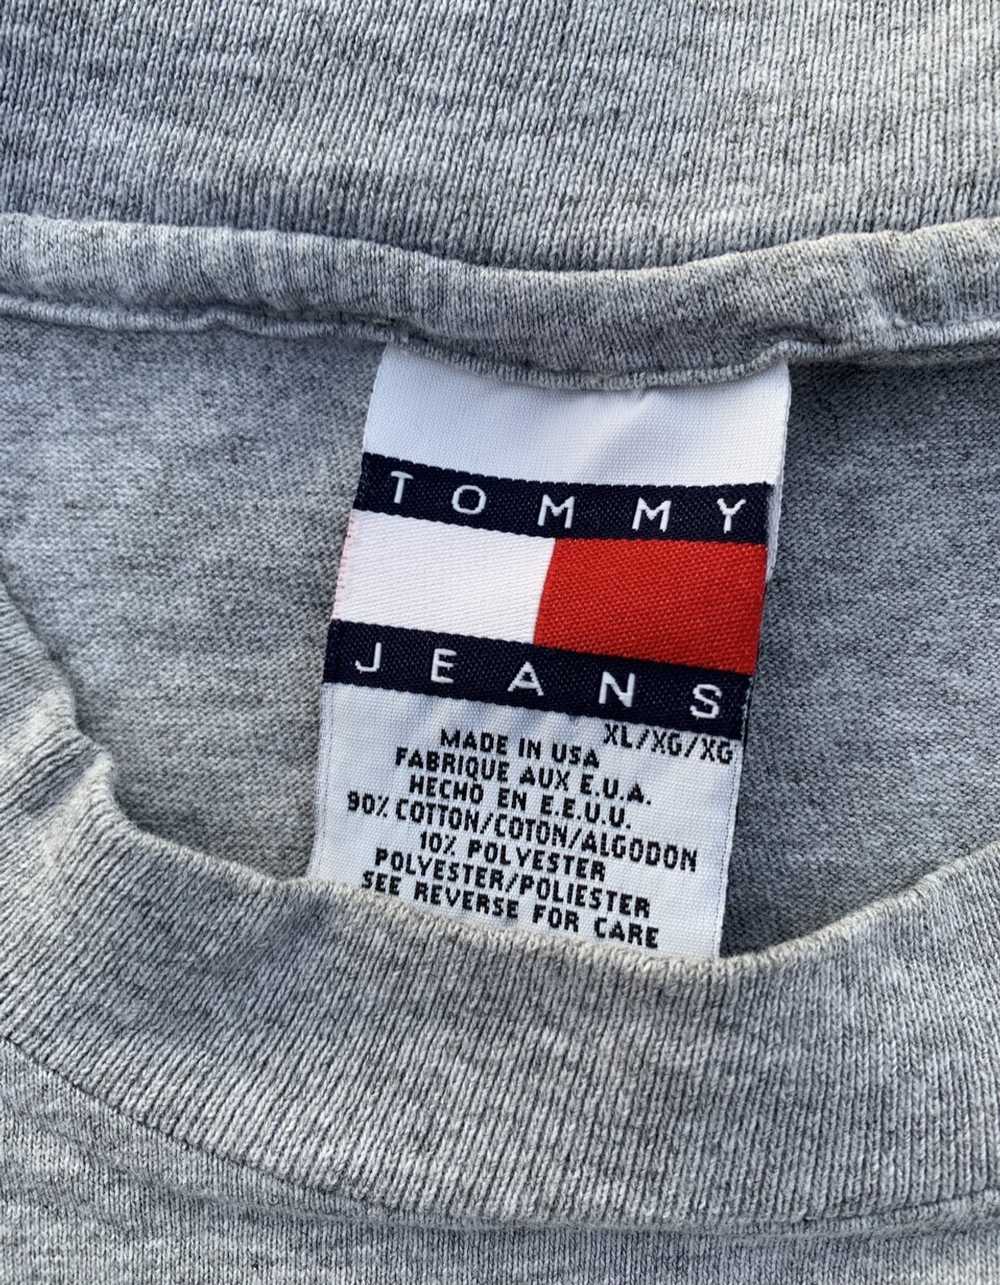 Tommy Hilfiger VTG 90s Tommy Hilfiger Jeans Big F… - image 2